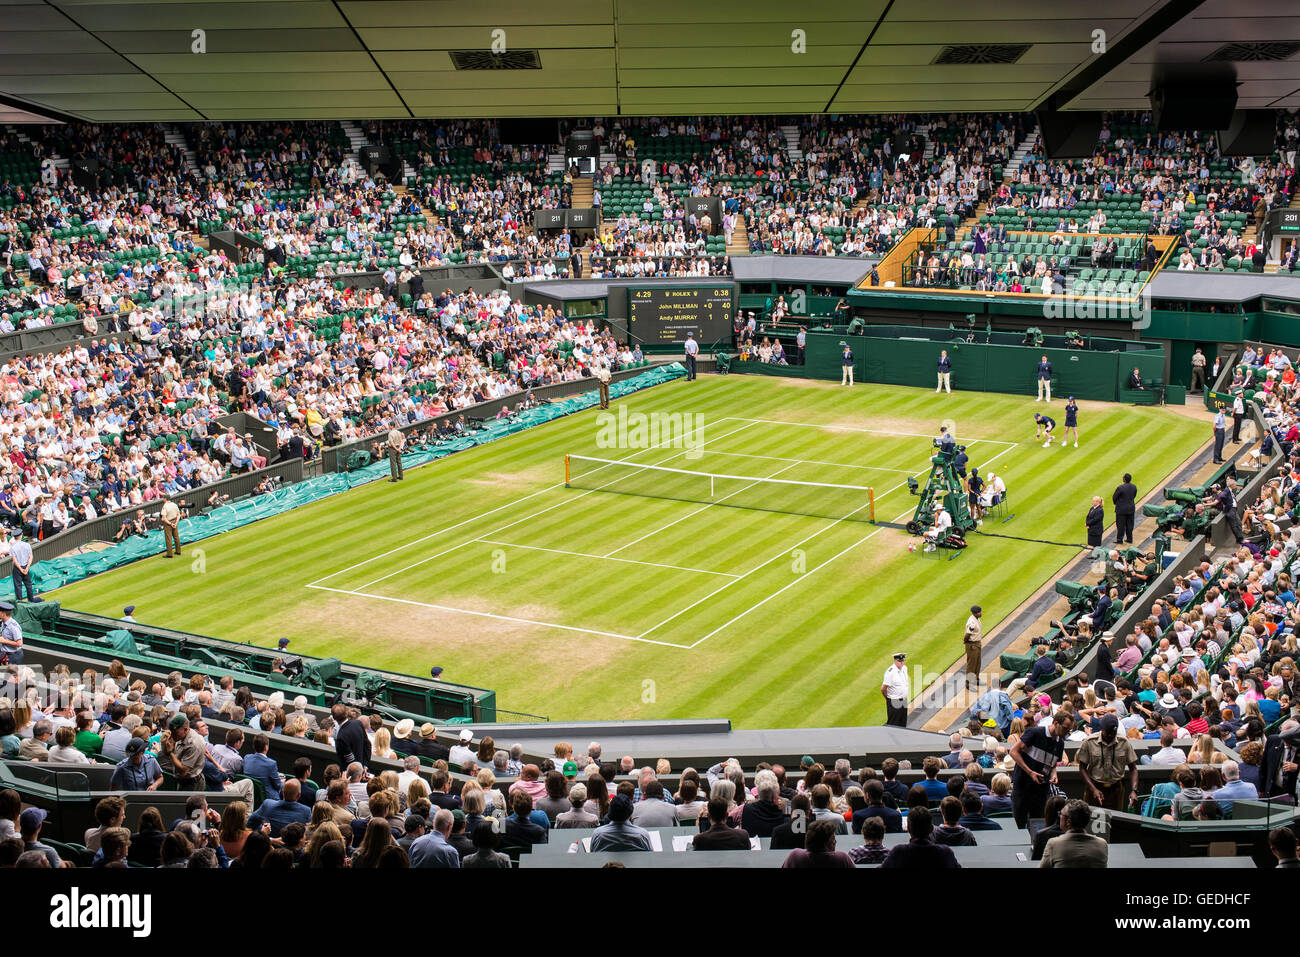 Vue sur le court central plein de spectateurs un match à Wimbledon All England Lawn Tennis Club championships. Wimbledon. Banque D'Images